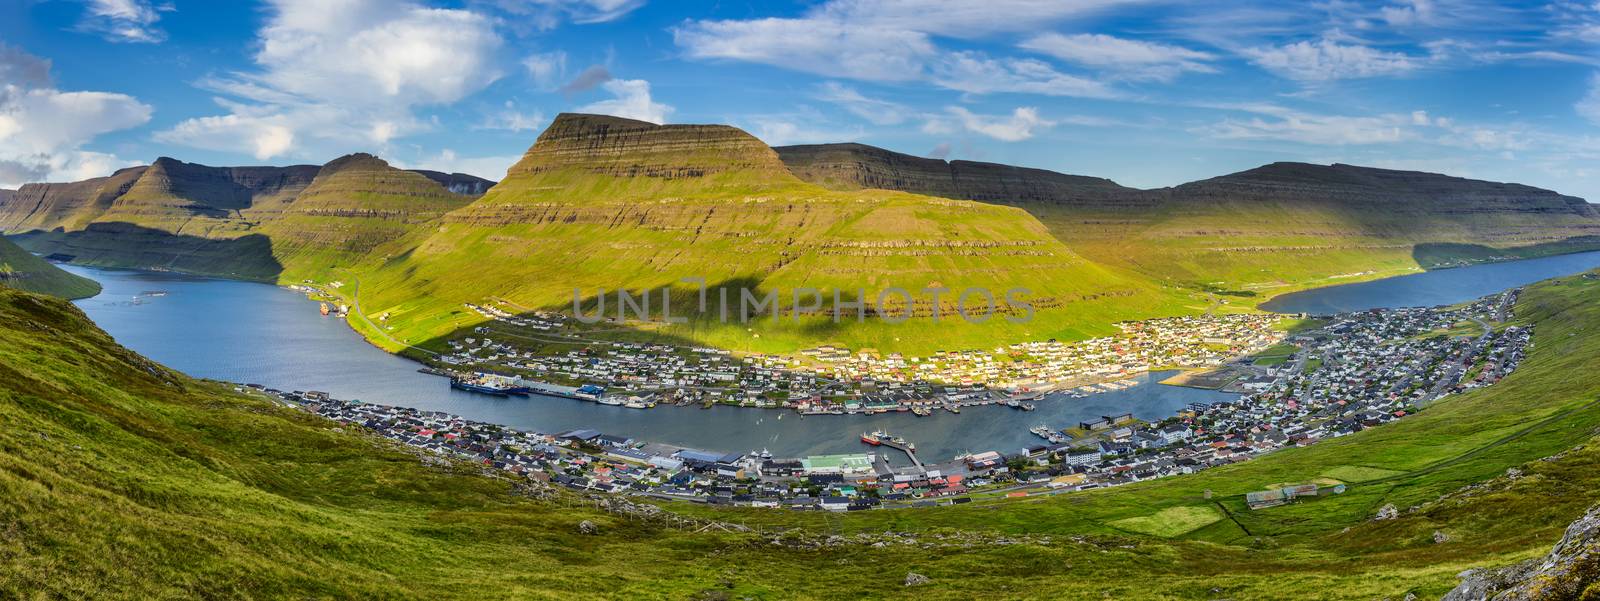 City of Klaksvik on Faroe Islands, Denmark by nickfox